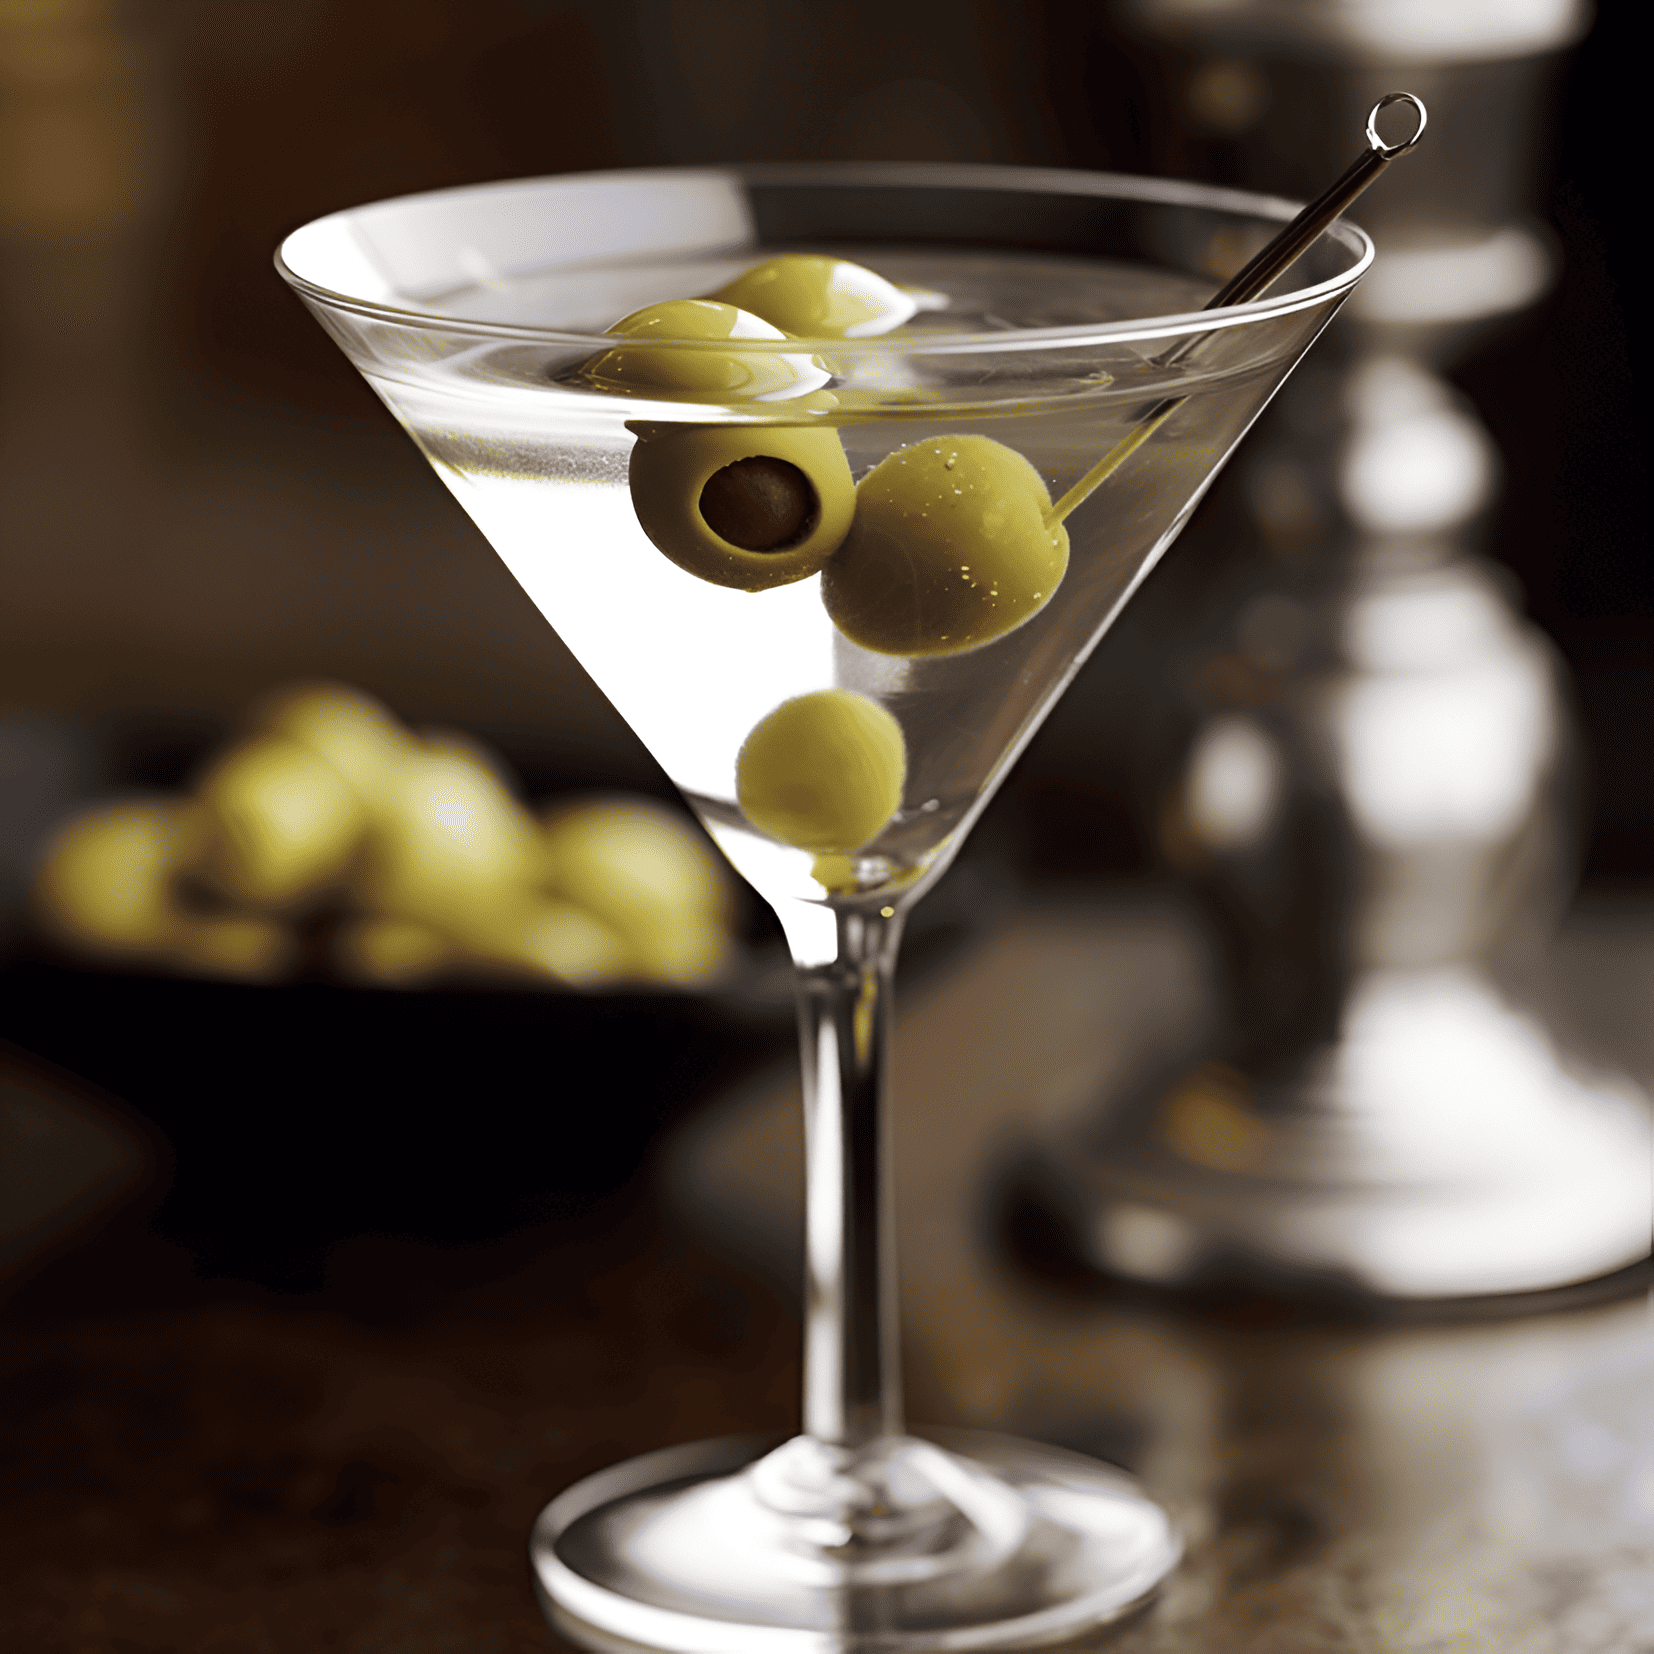 Dirty Martini Cóctel Receta - El Dirty Martini tiene un sabor audaz y sabroso con un toque de salinidad de la salmuera de aceituna. Es un cóctel fuerte y ligeramente amargo con un final suave.